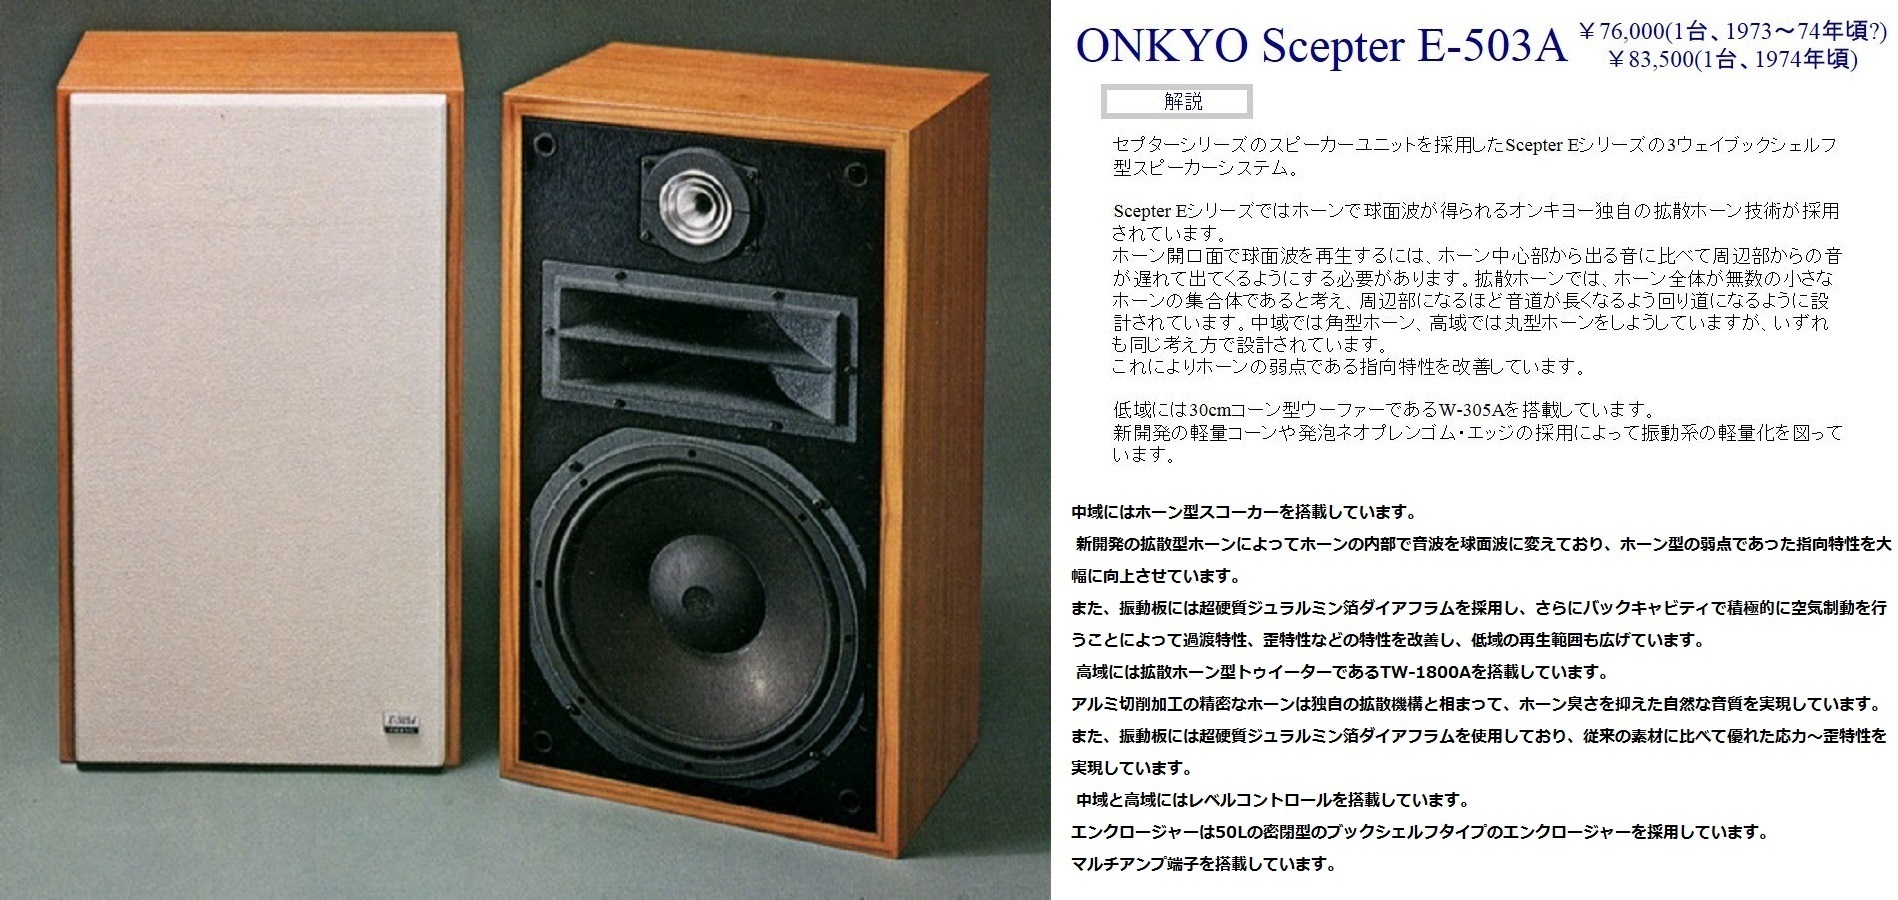 愛用スピーカー ONKYO SCEPTER E-503A: エミュなクラちゃん